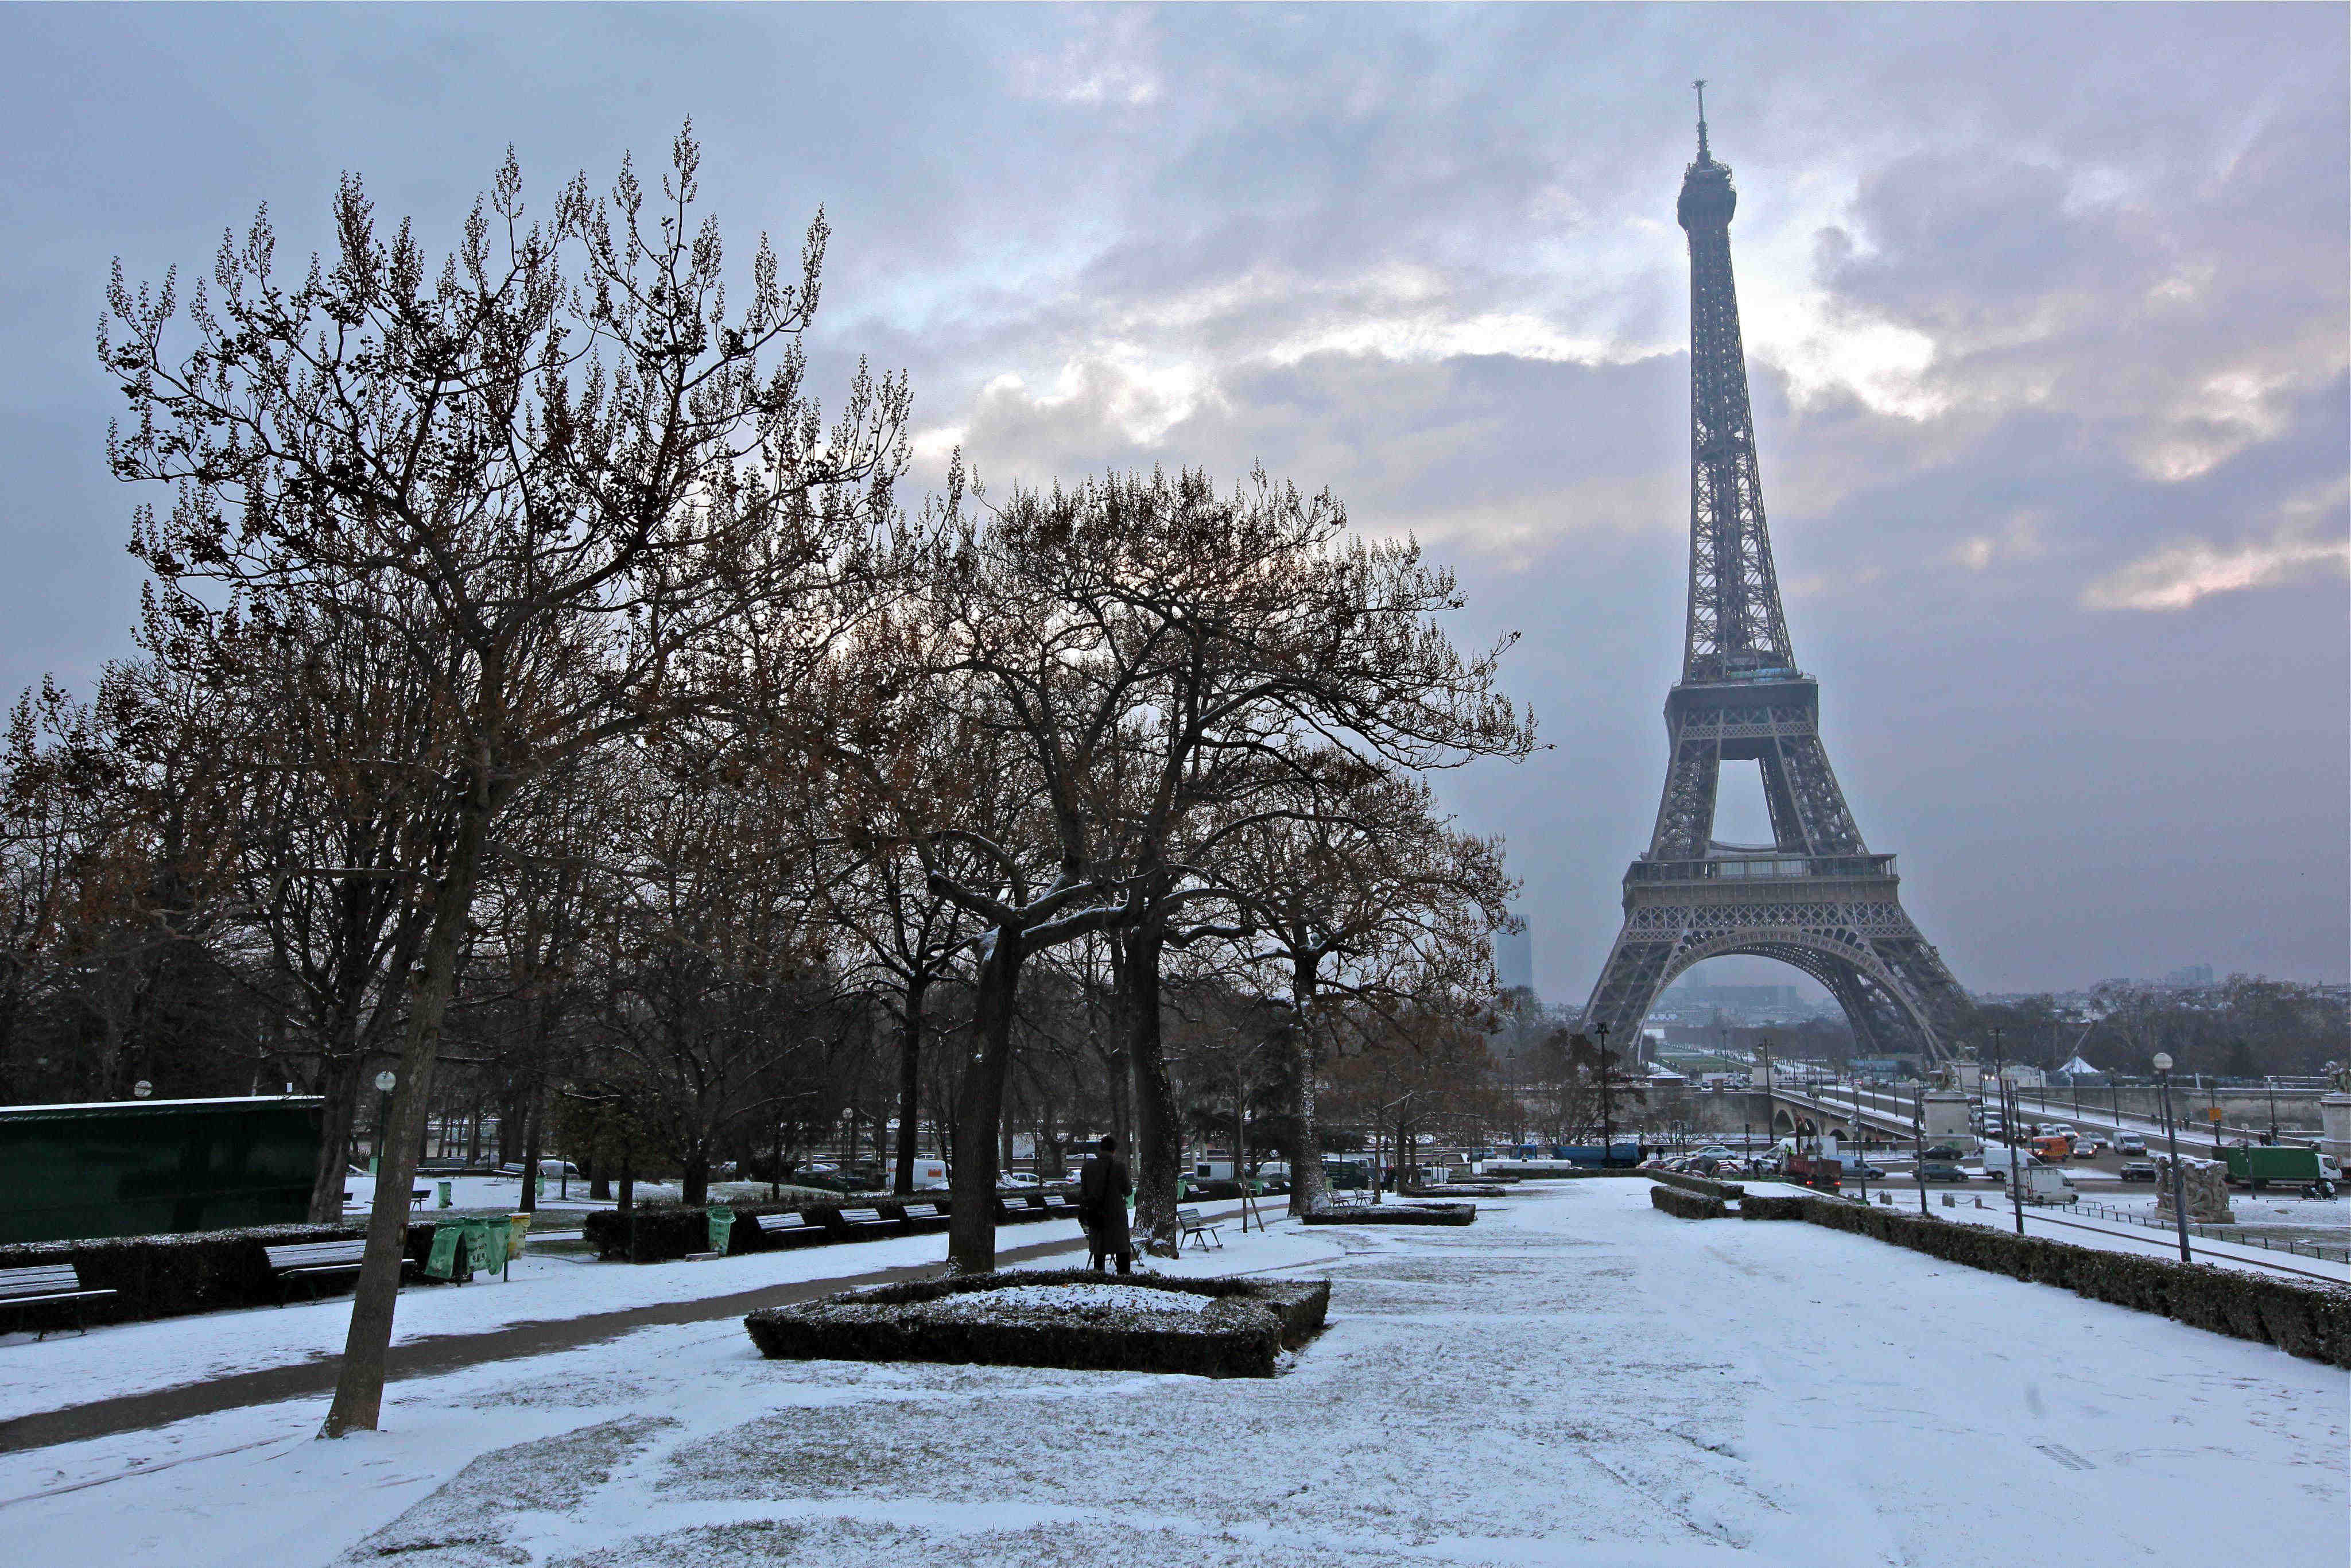 Winter saving at Paris hotels